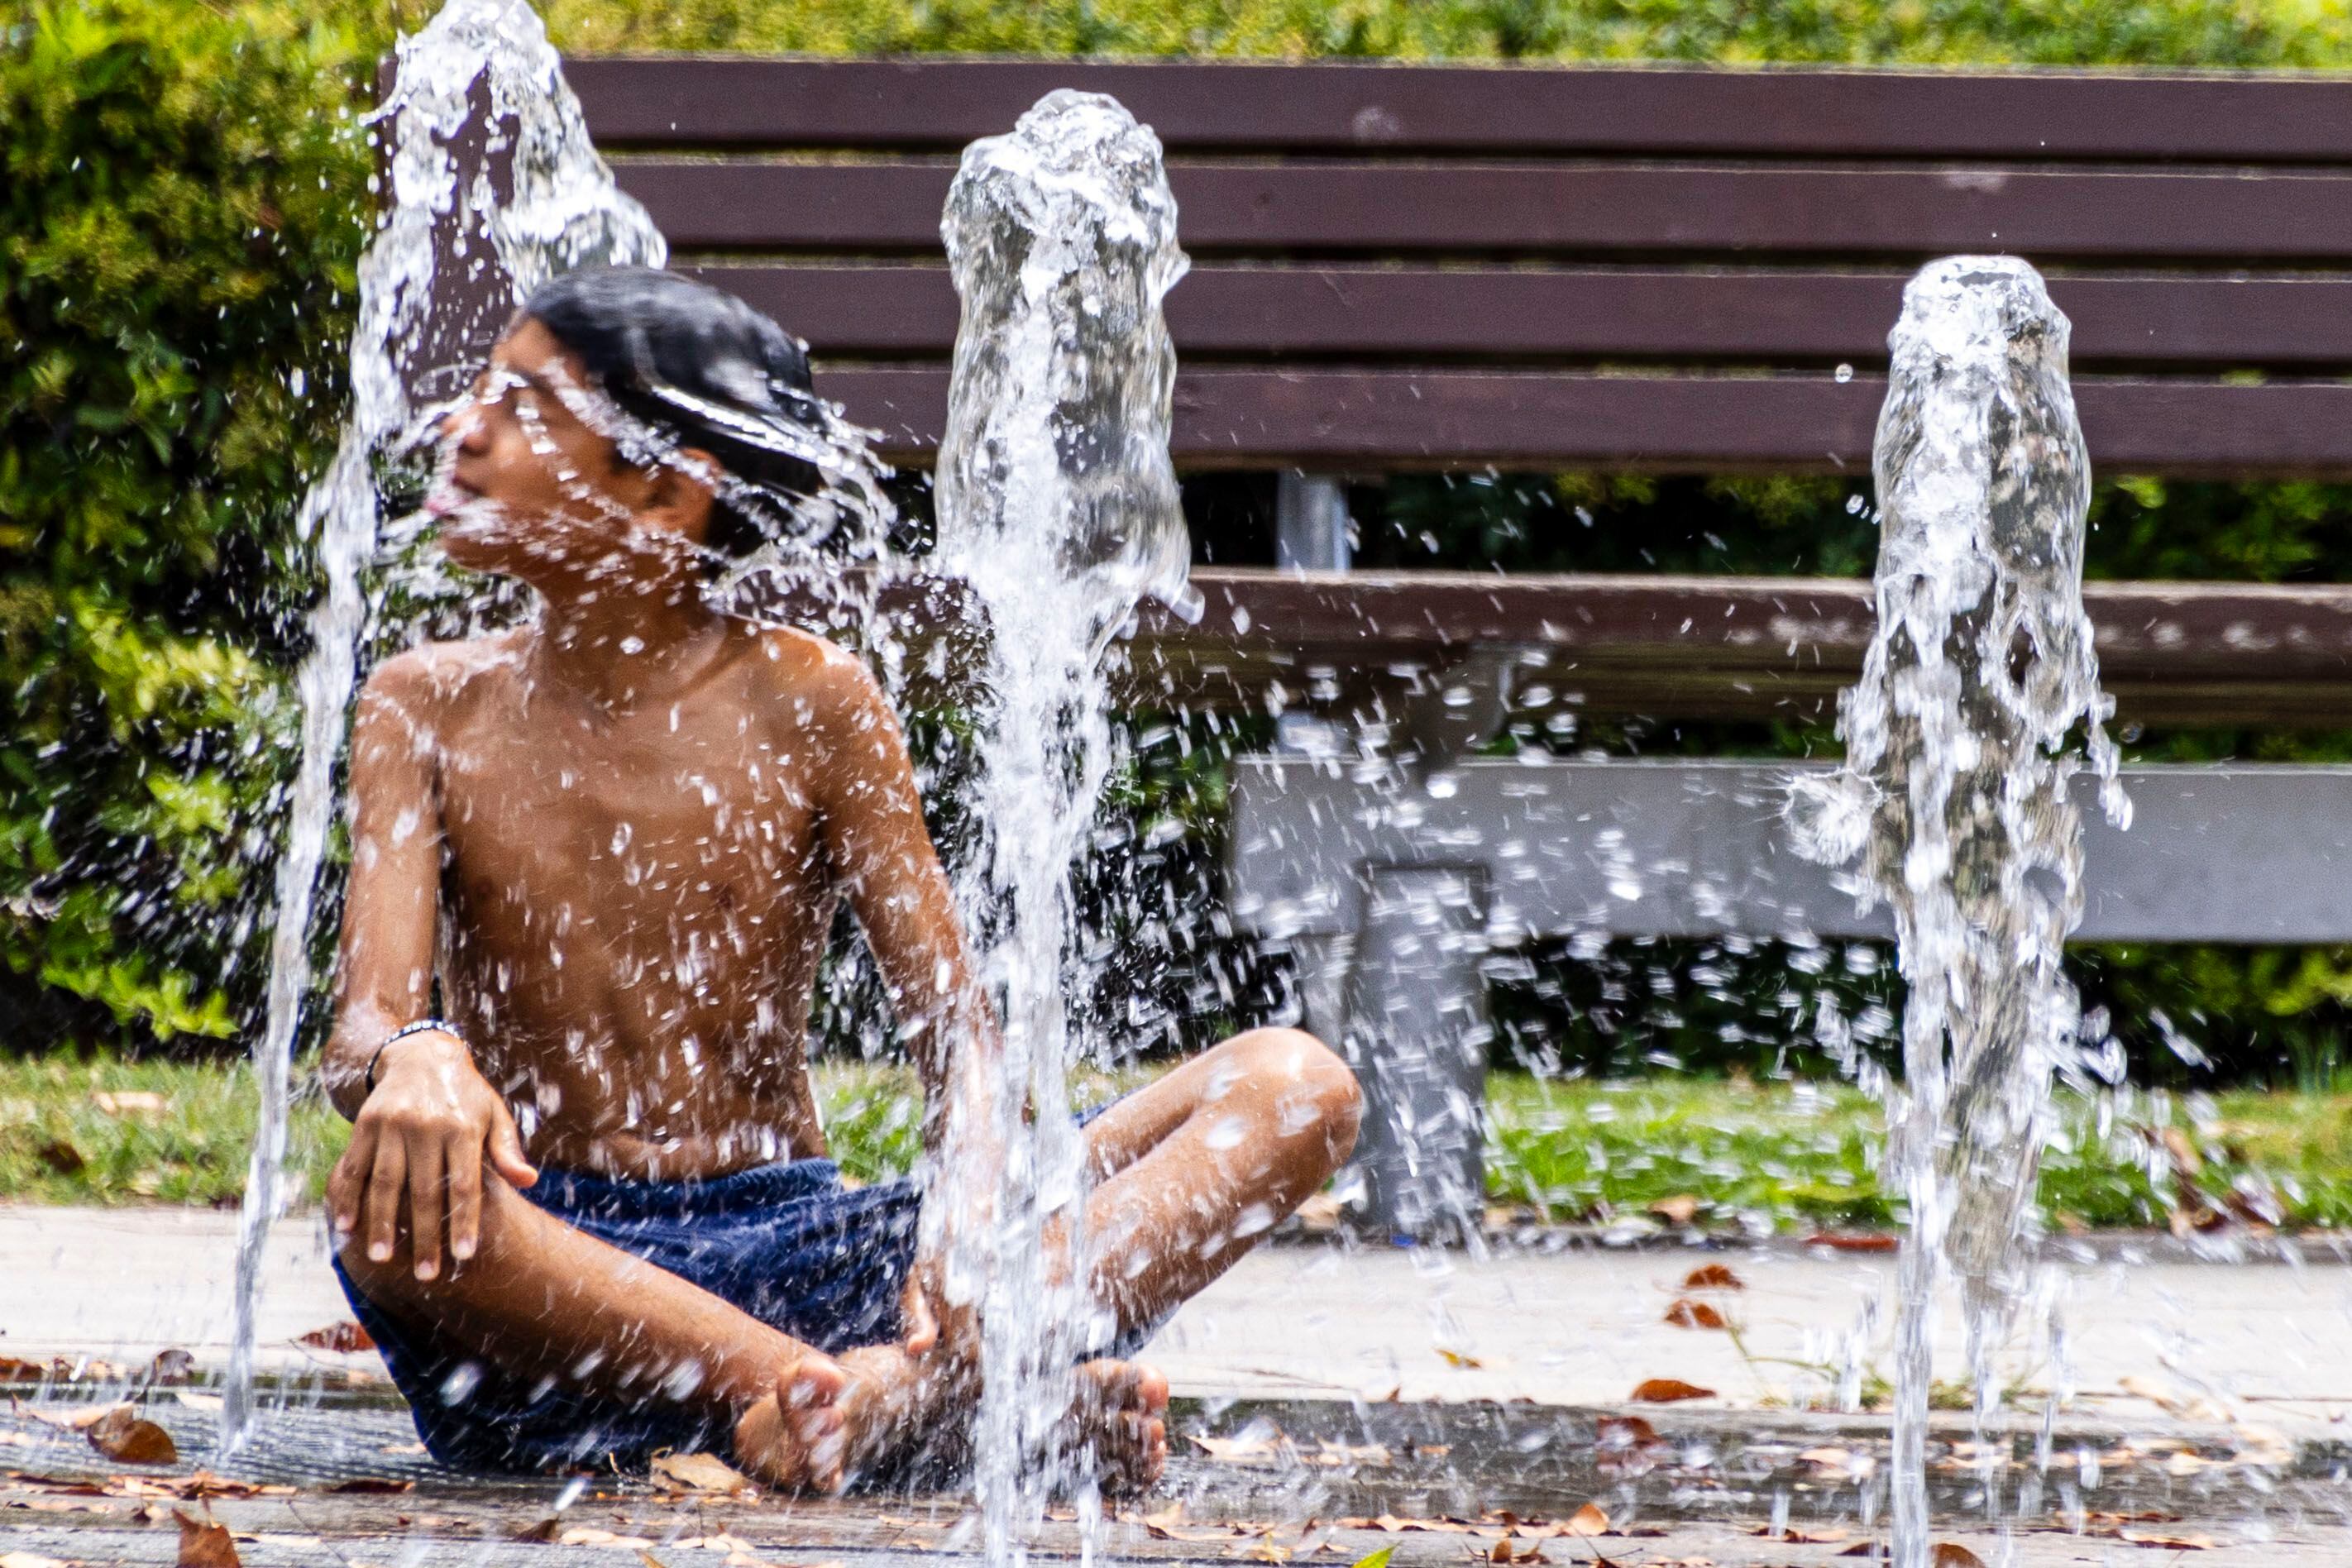 Un niño se refresca en una fuente de agua del Parque de les Estacions, en Palma de Mallorca este lunes.